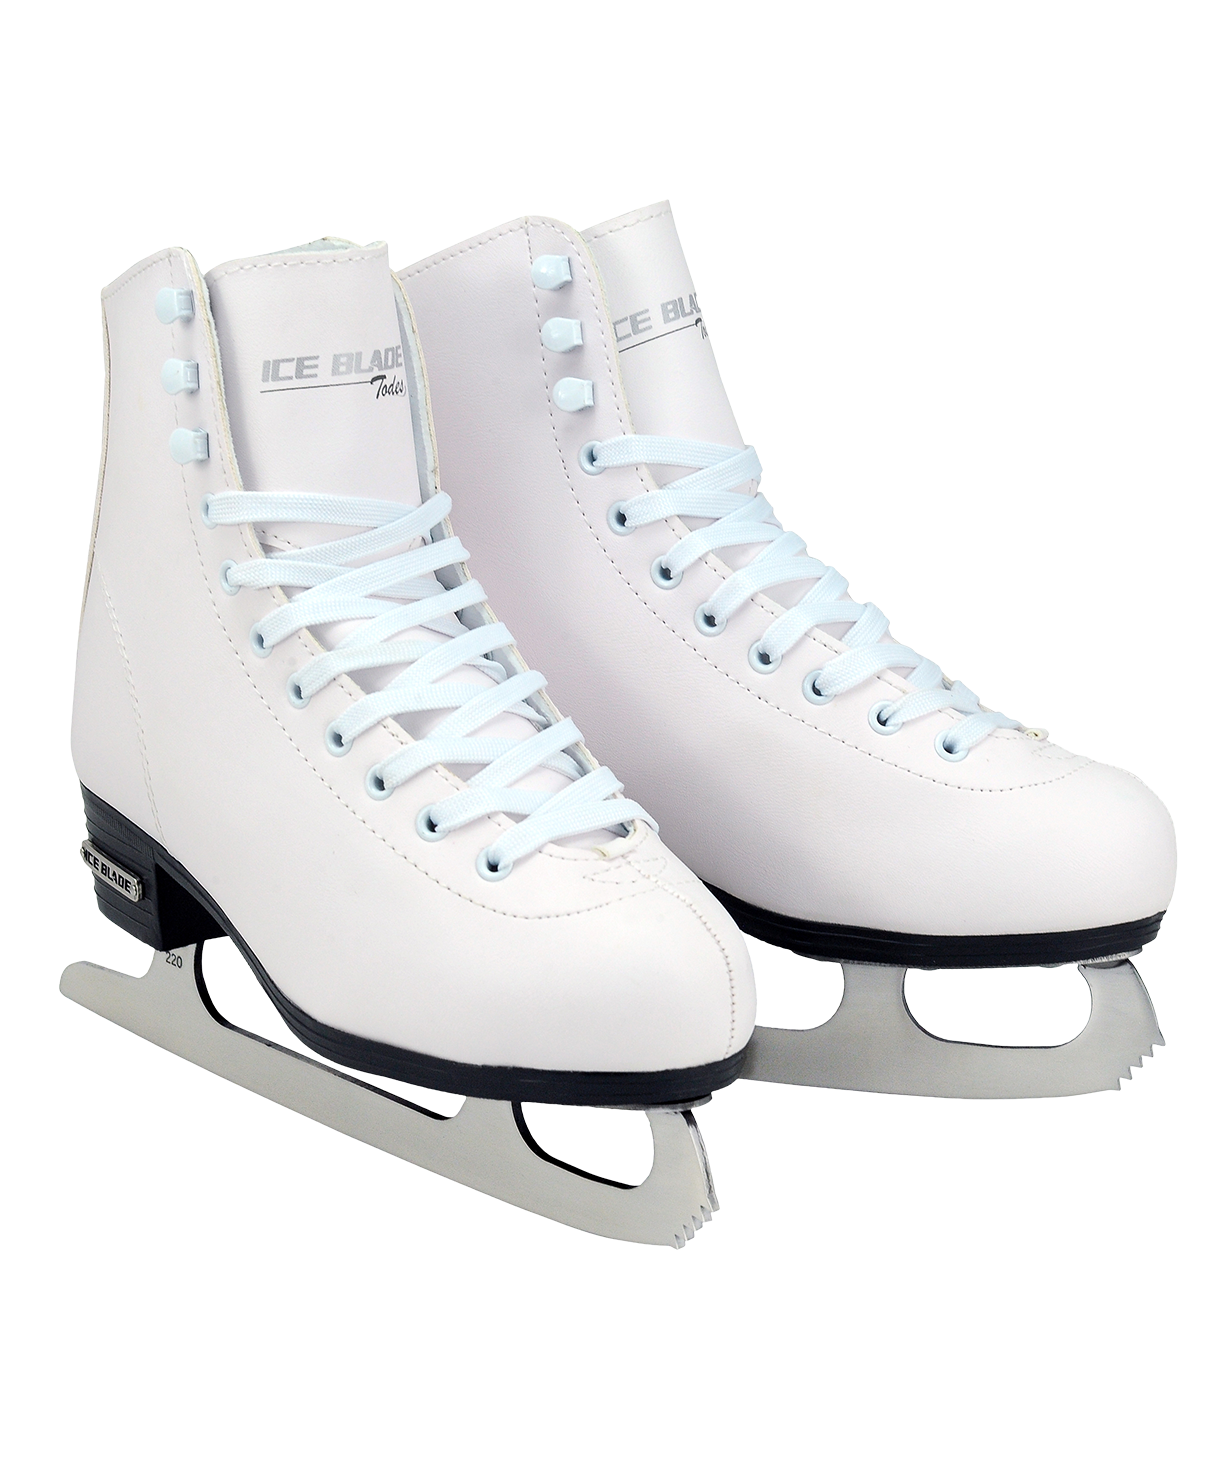 하얀 아이스 스케이팅 신발 PNG 무료 다운로드